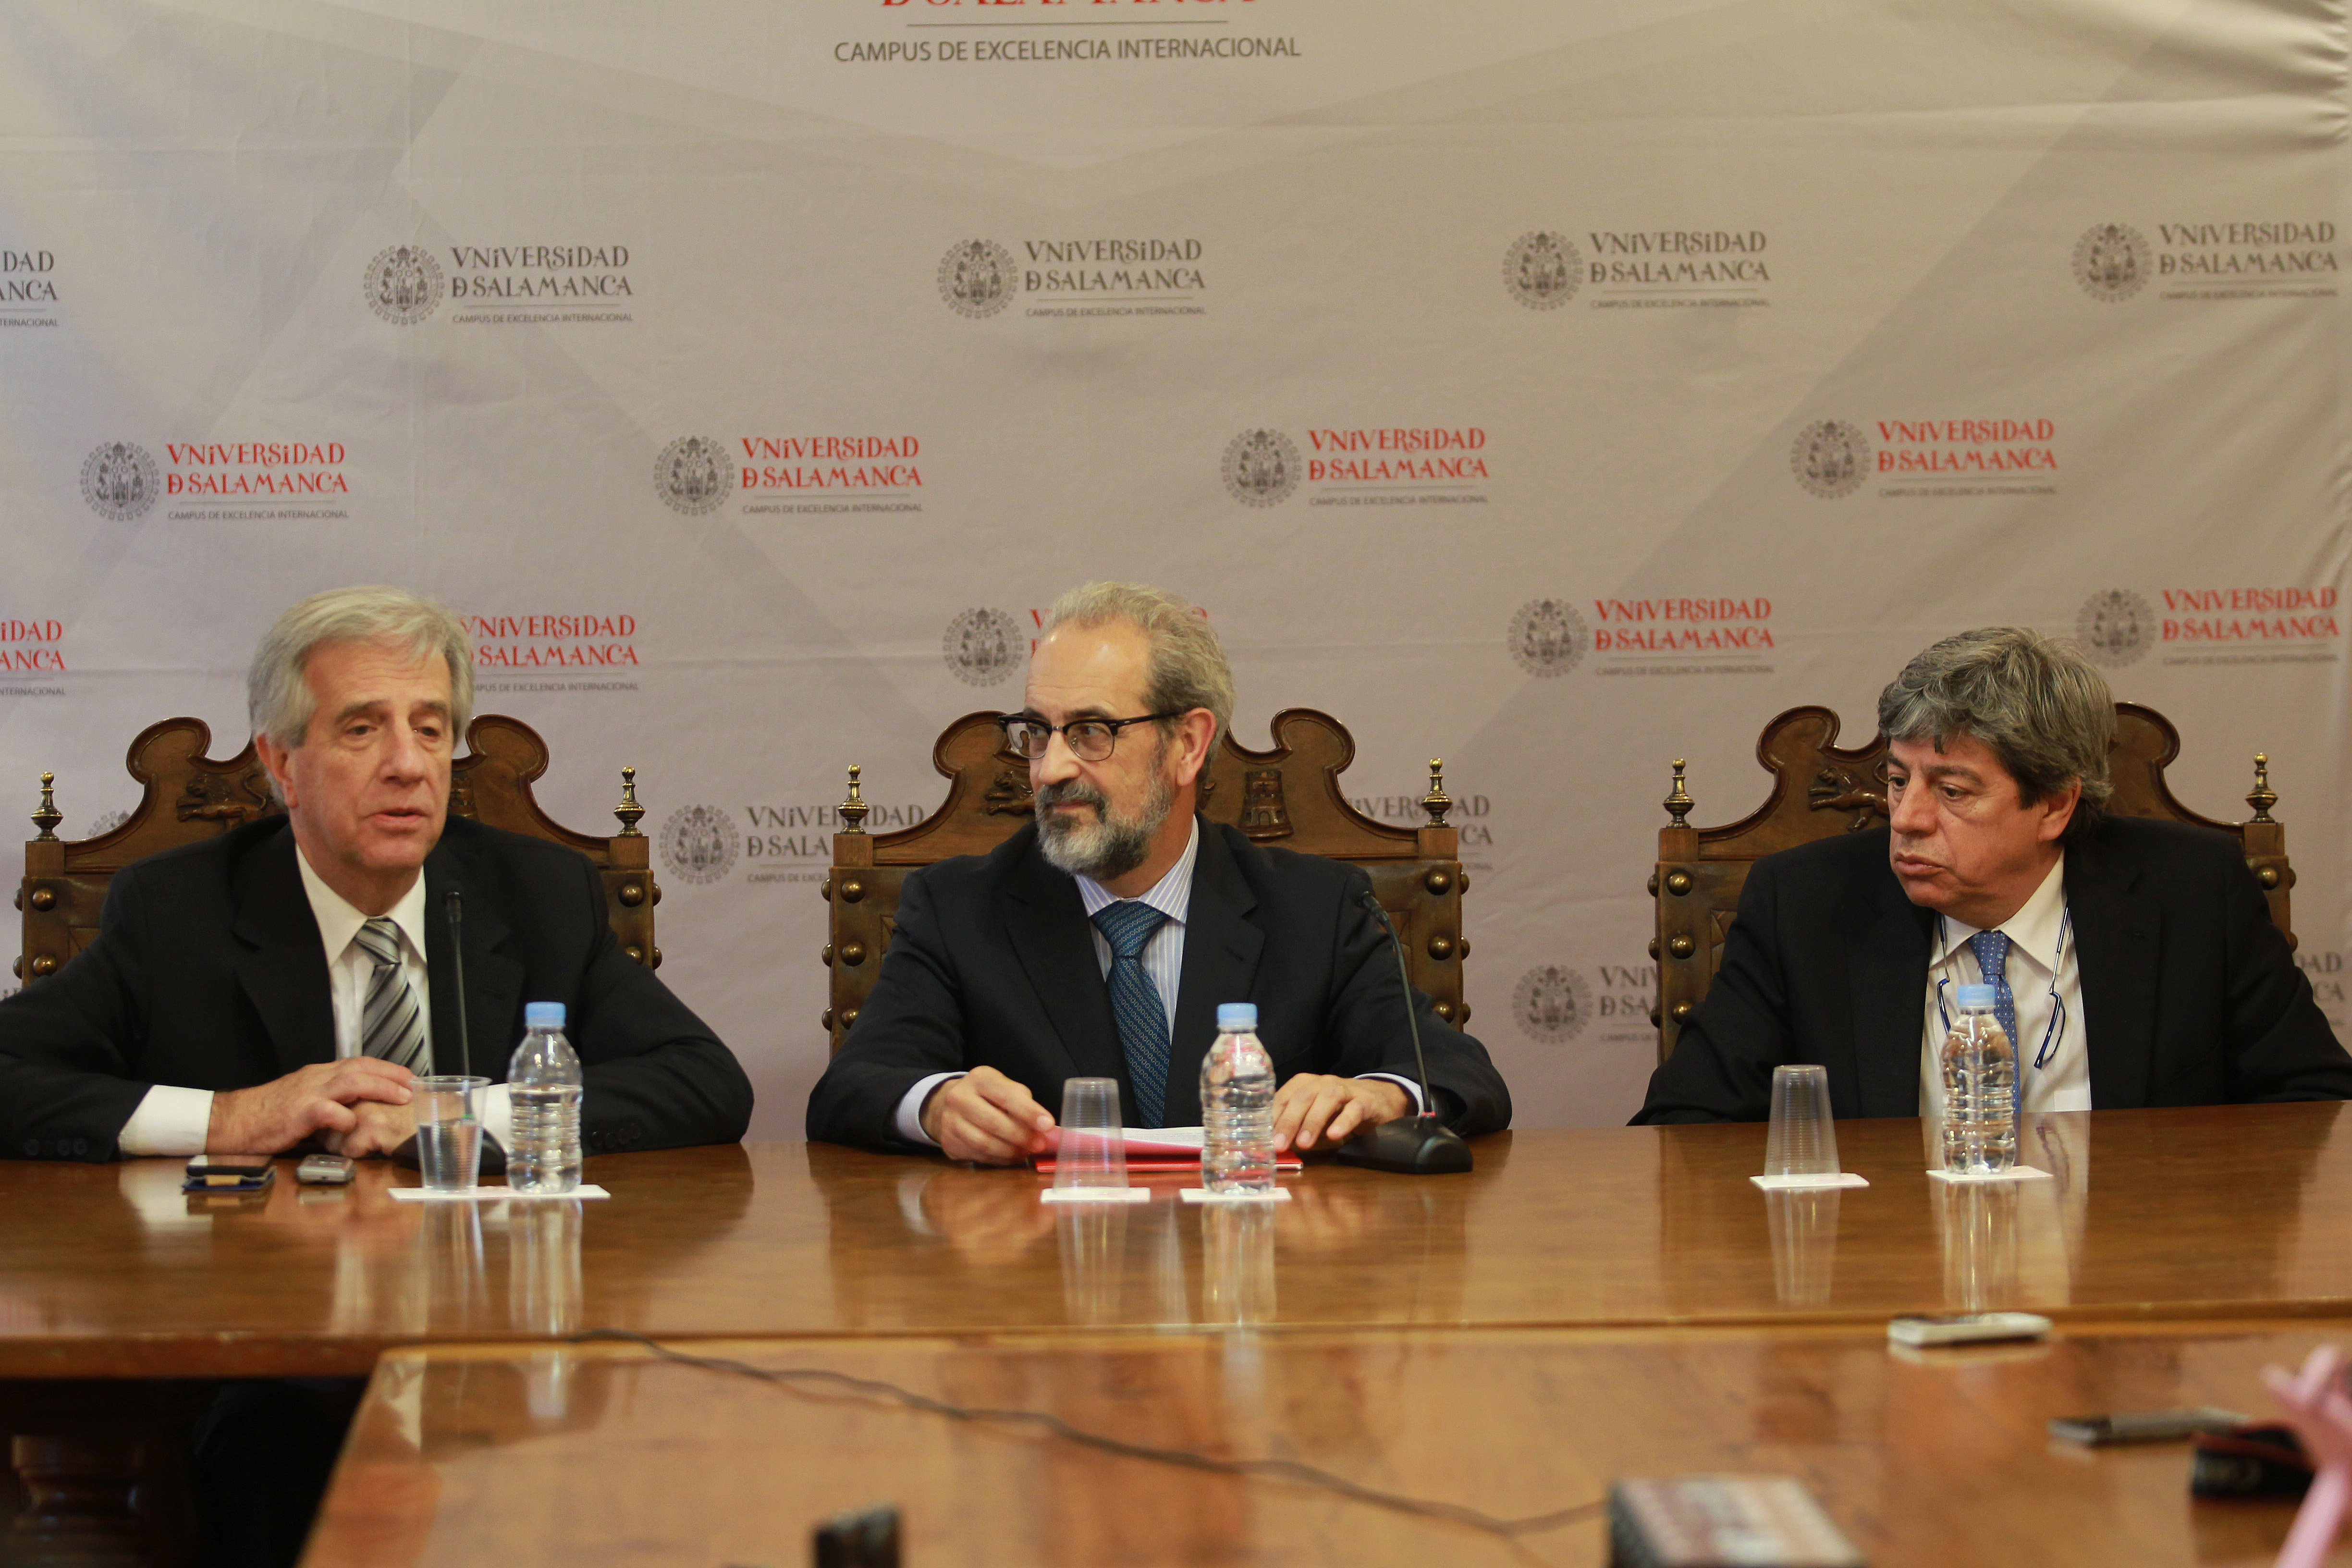 La Universidad de Salamanca inviste doctor honoris causa al oncólogo y expresidente de la República de Uruguay, Tabaré Vázquez Rosas